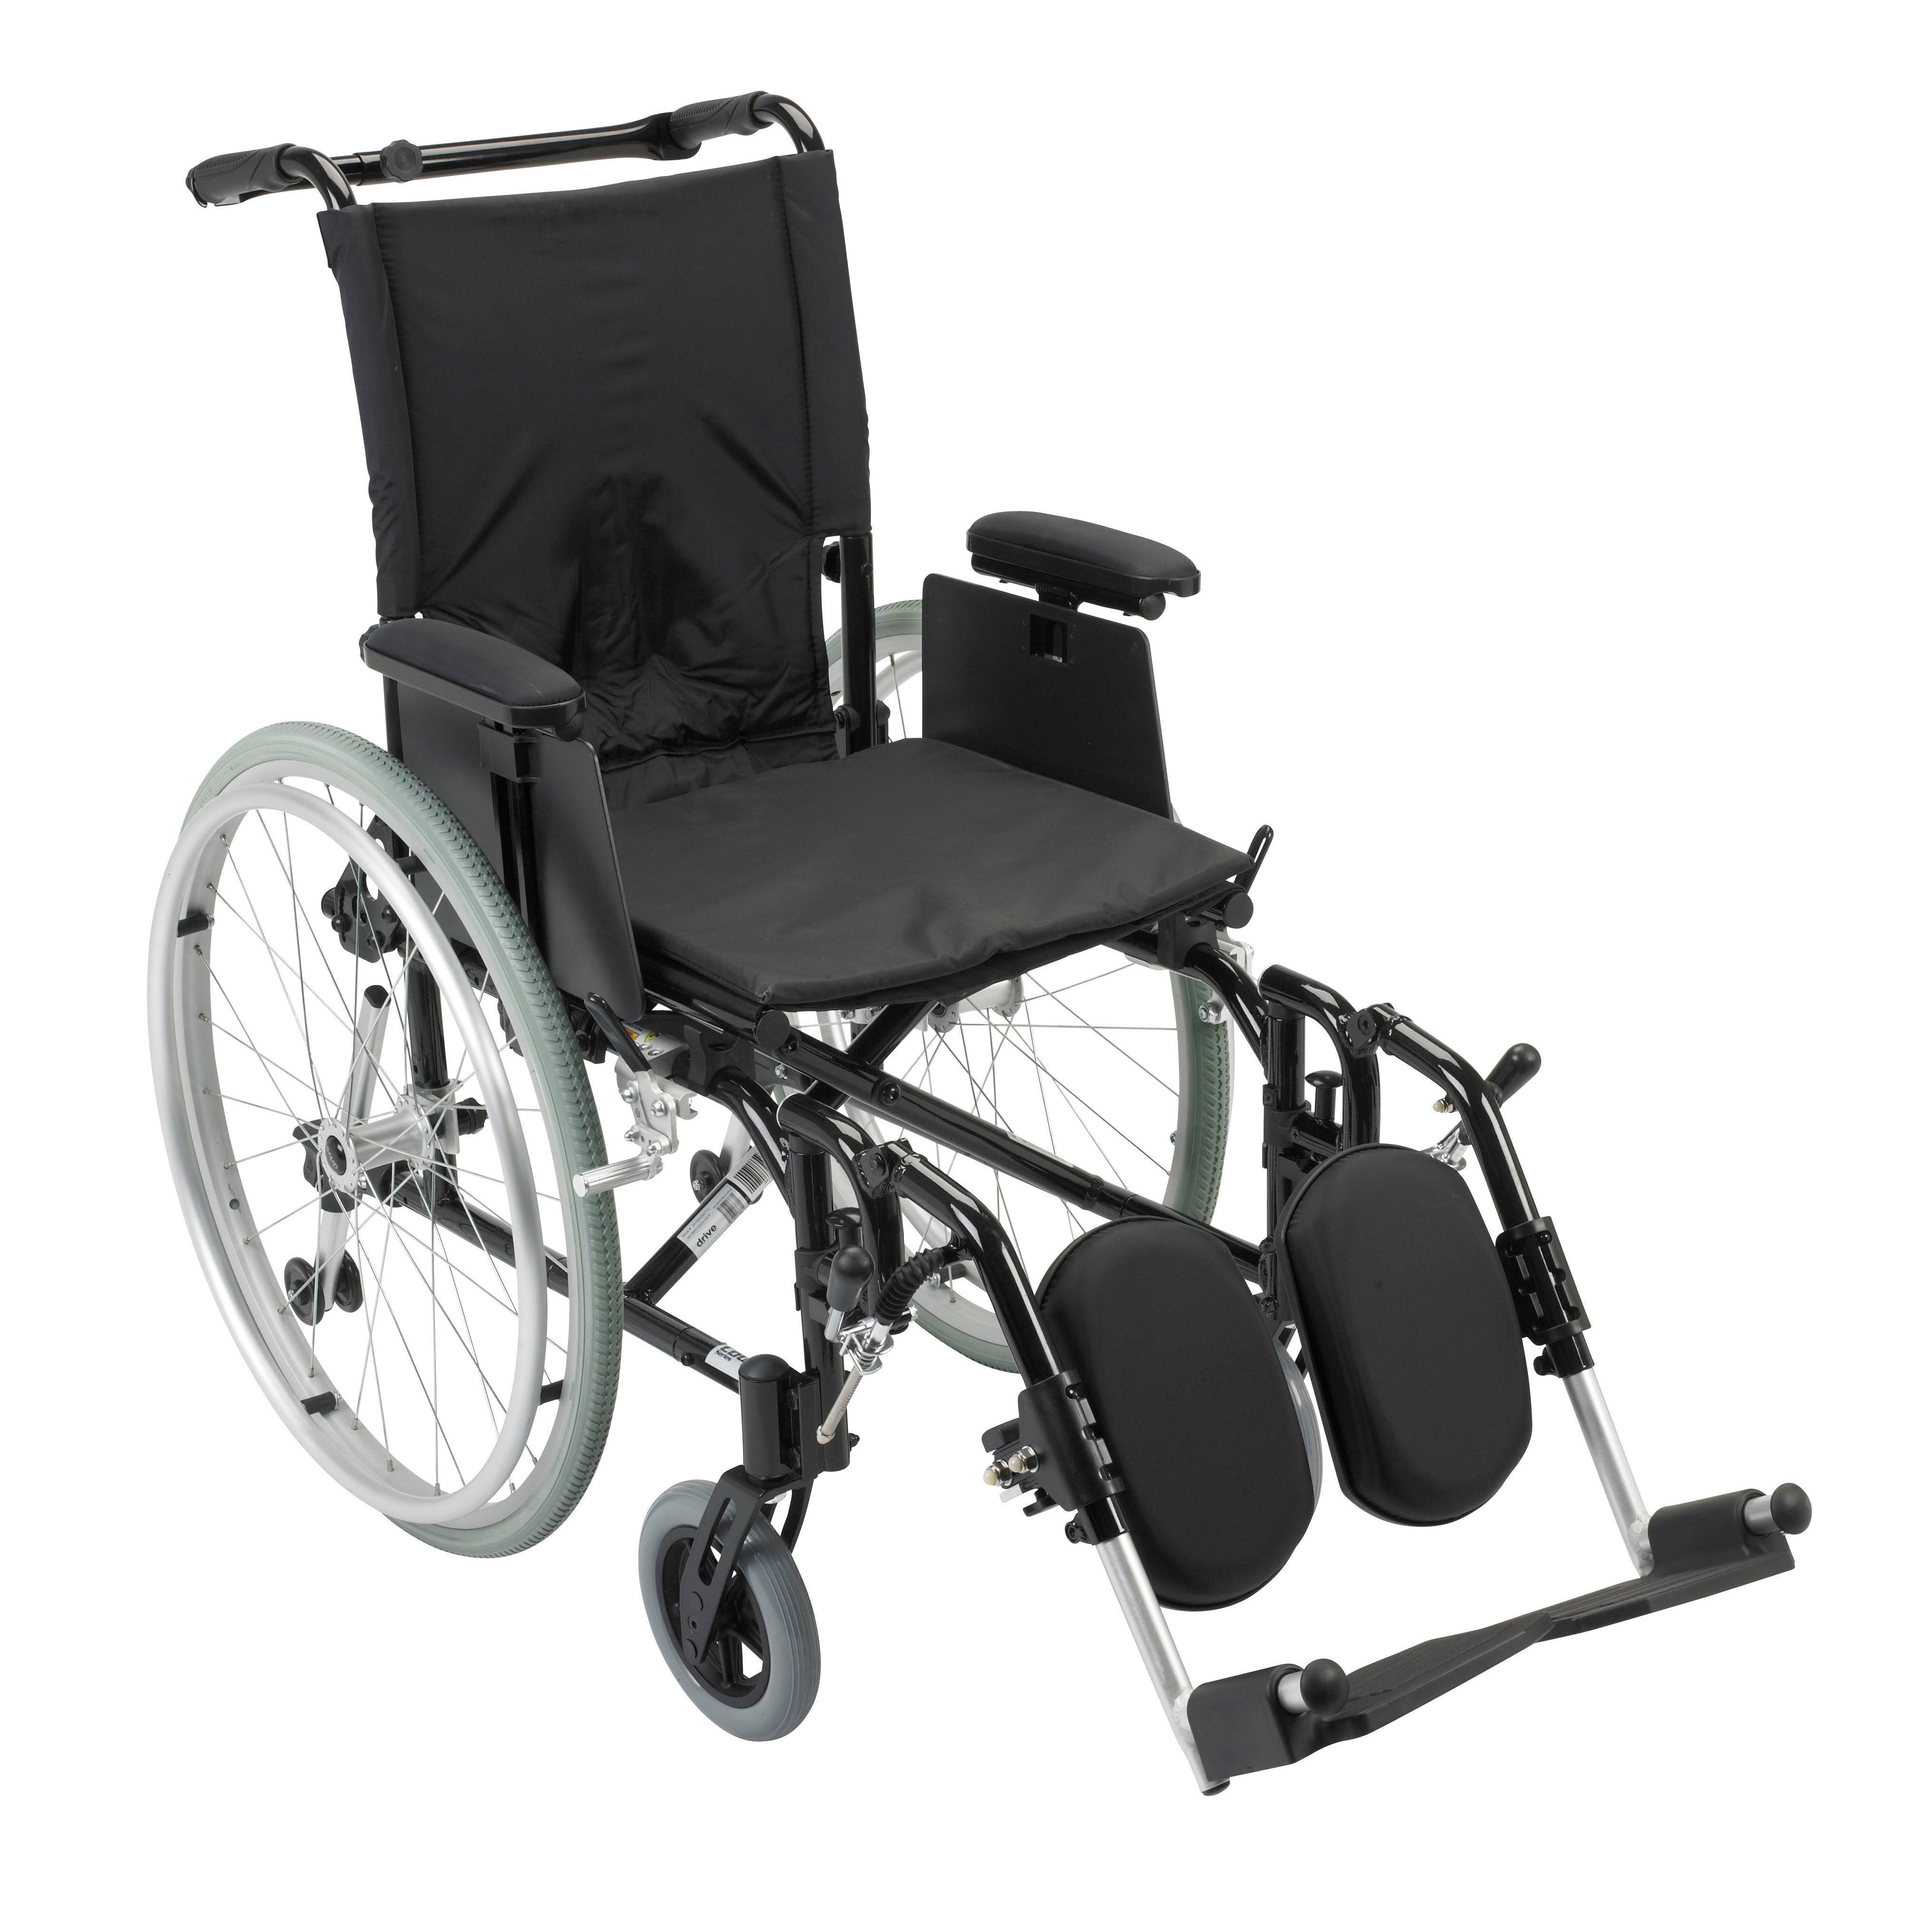 Drive Варианты сверхлегких инвалидных колясок Cougar - Размер: 16 футов x 16 футов Подножки: подъемные подножки